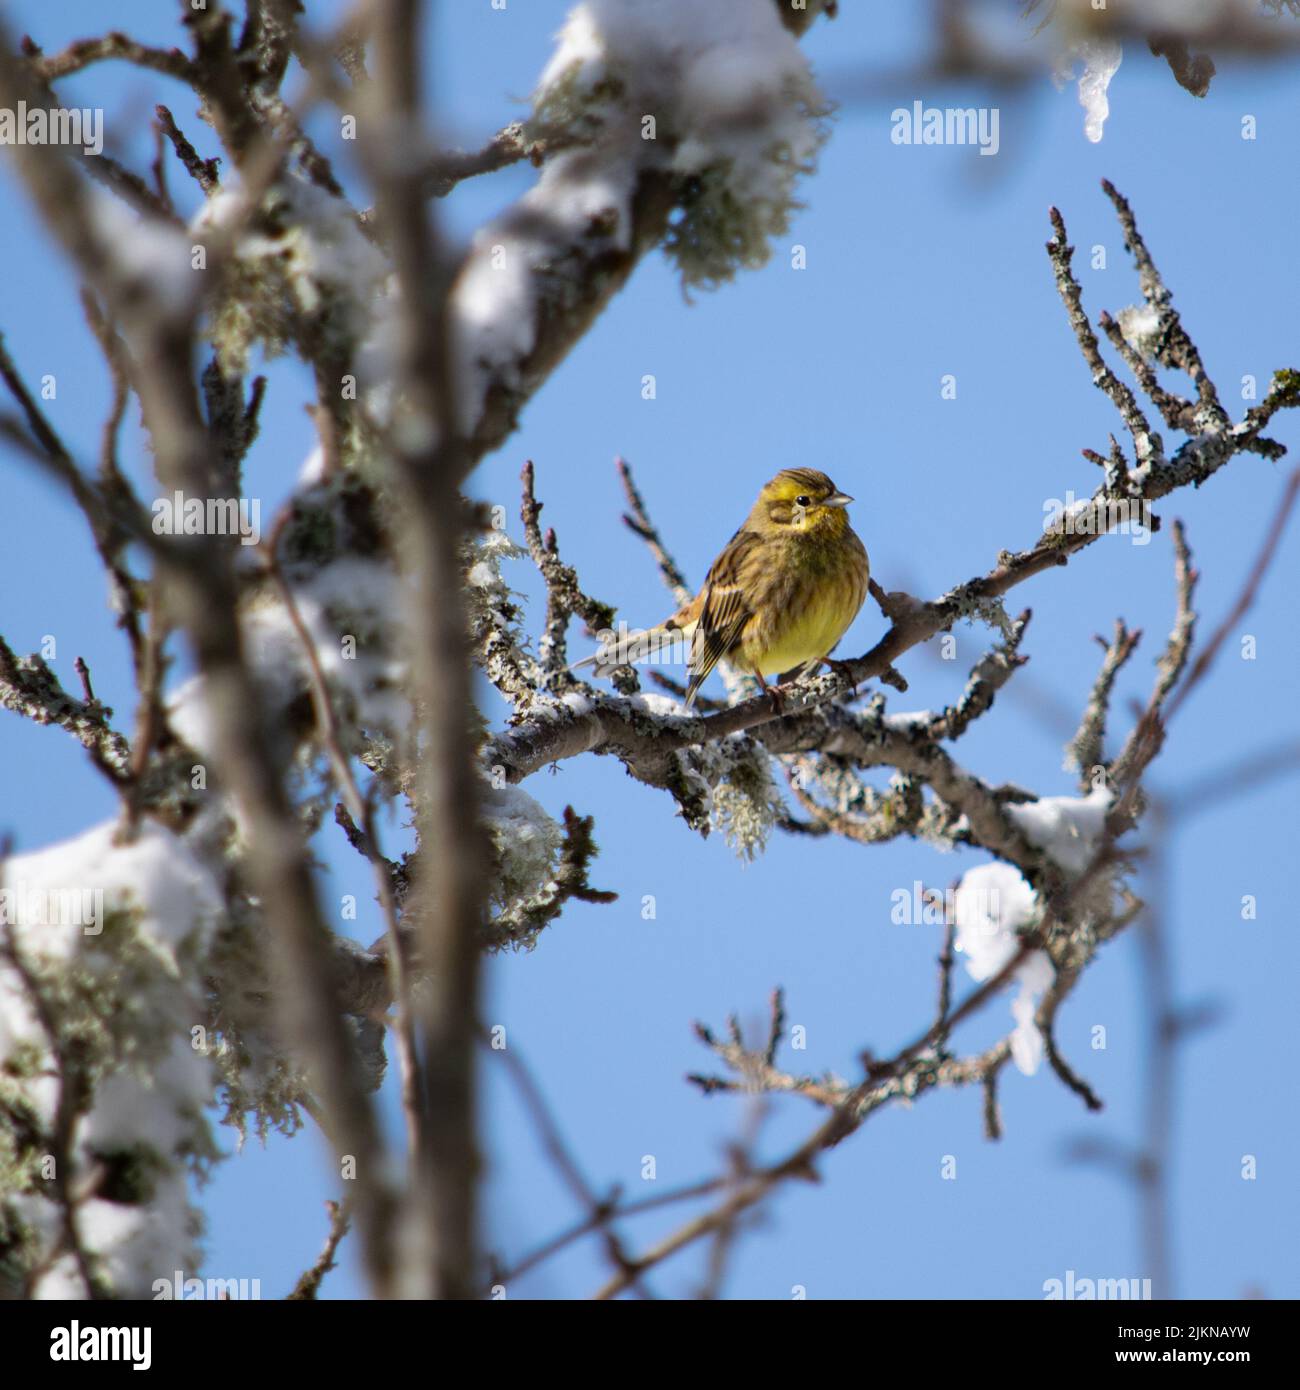 Un primer plano de una avena ordinaria de color amarillo brillante sentada en una rama de árbol en invierno. Foto de stock